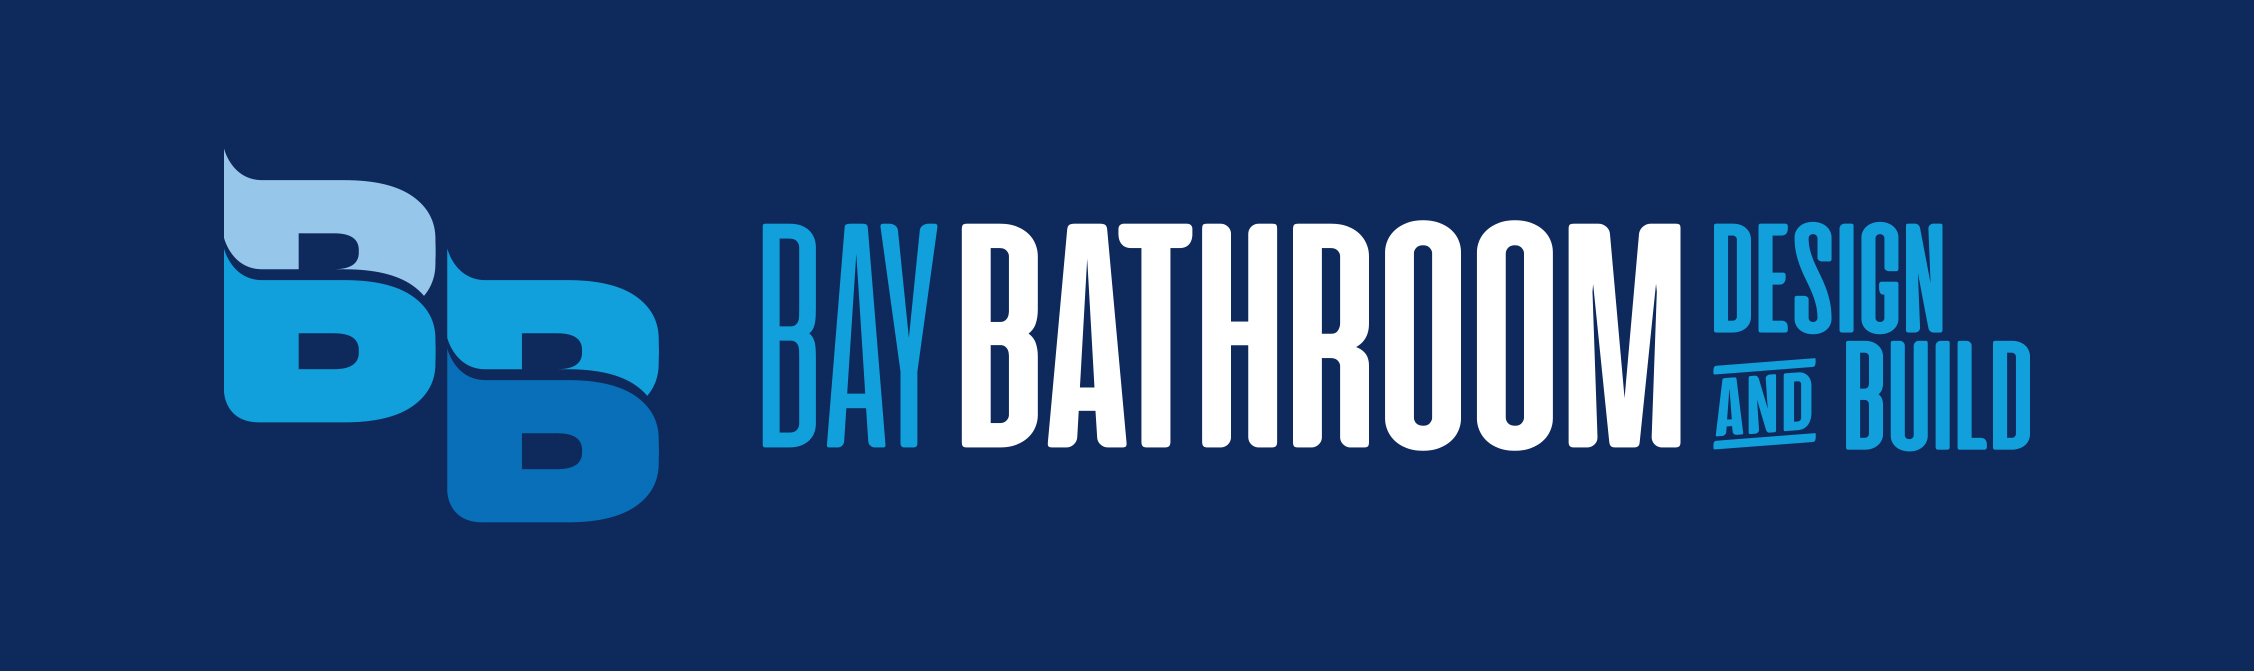 Bay Bathroom Design & Build